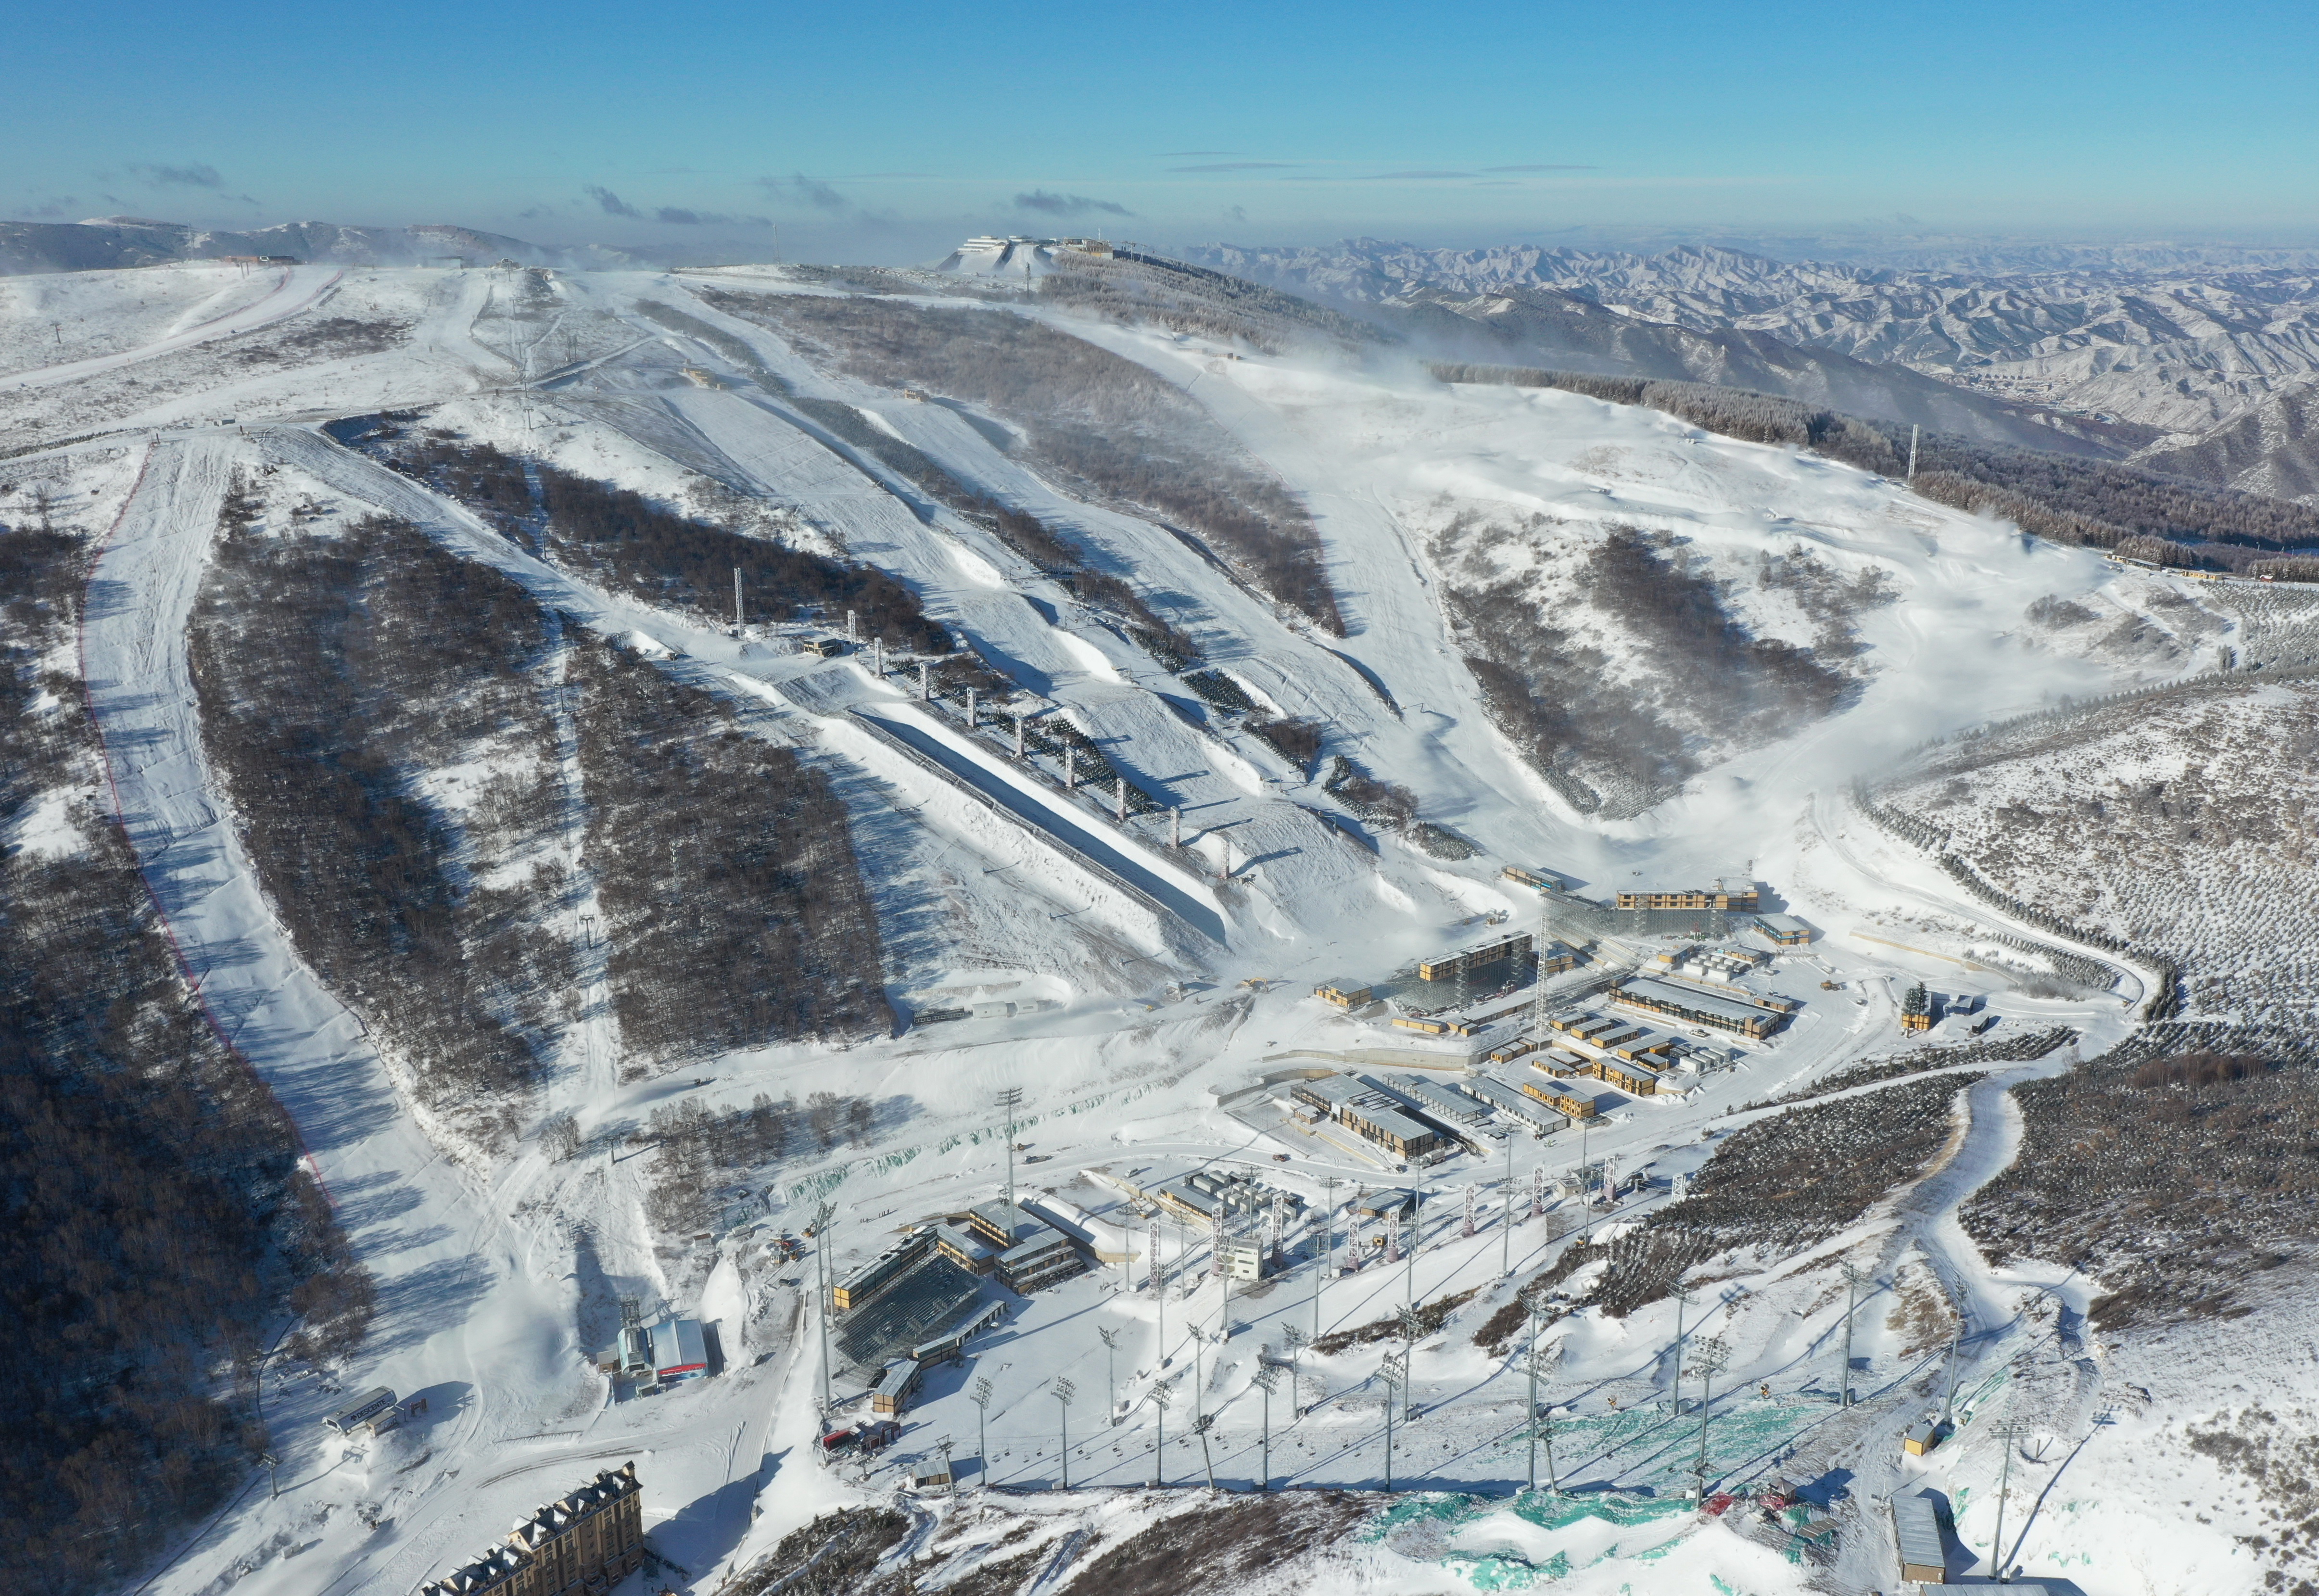 据介绍,云顶滑雪公园的场馆规划建设和运行测试过程均考虑与雪场运营